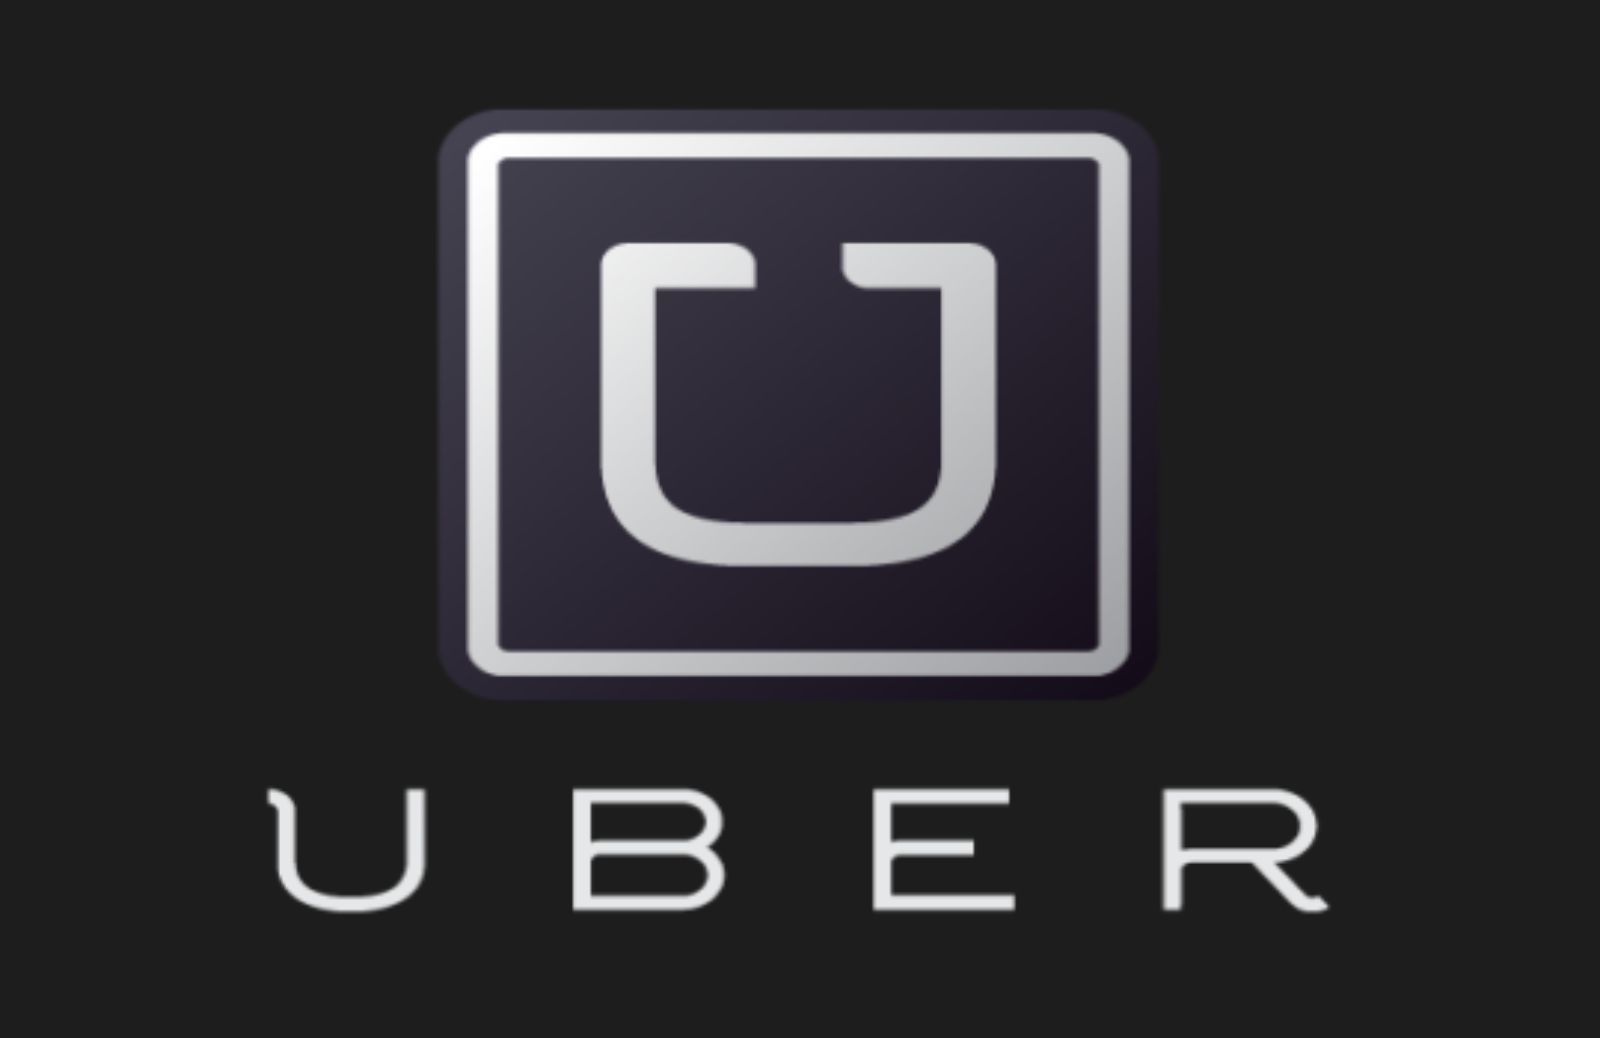 Come funziona Uber, l'alternativa al taxi al centro di grandi polemiche 